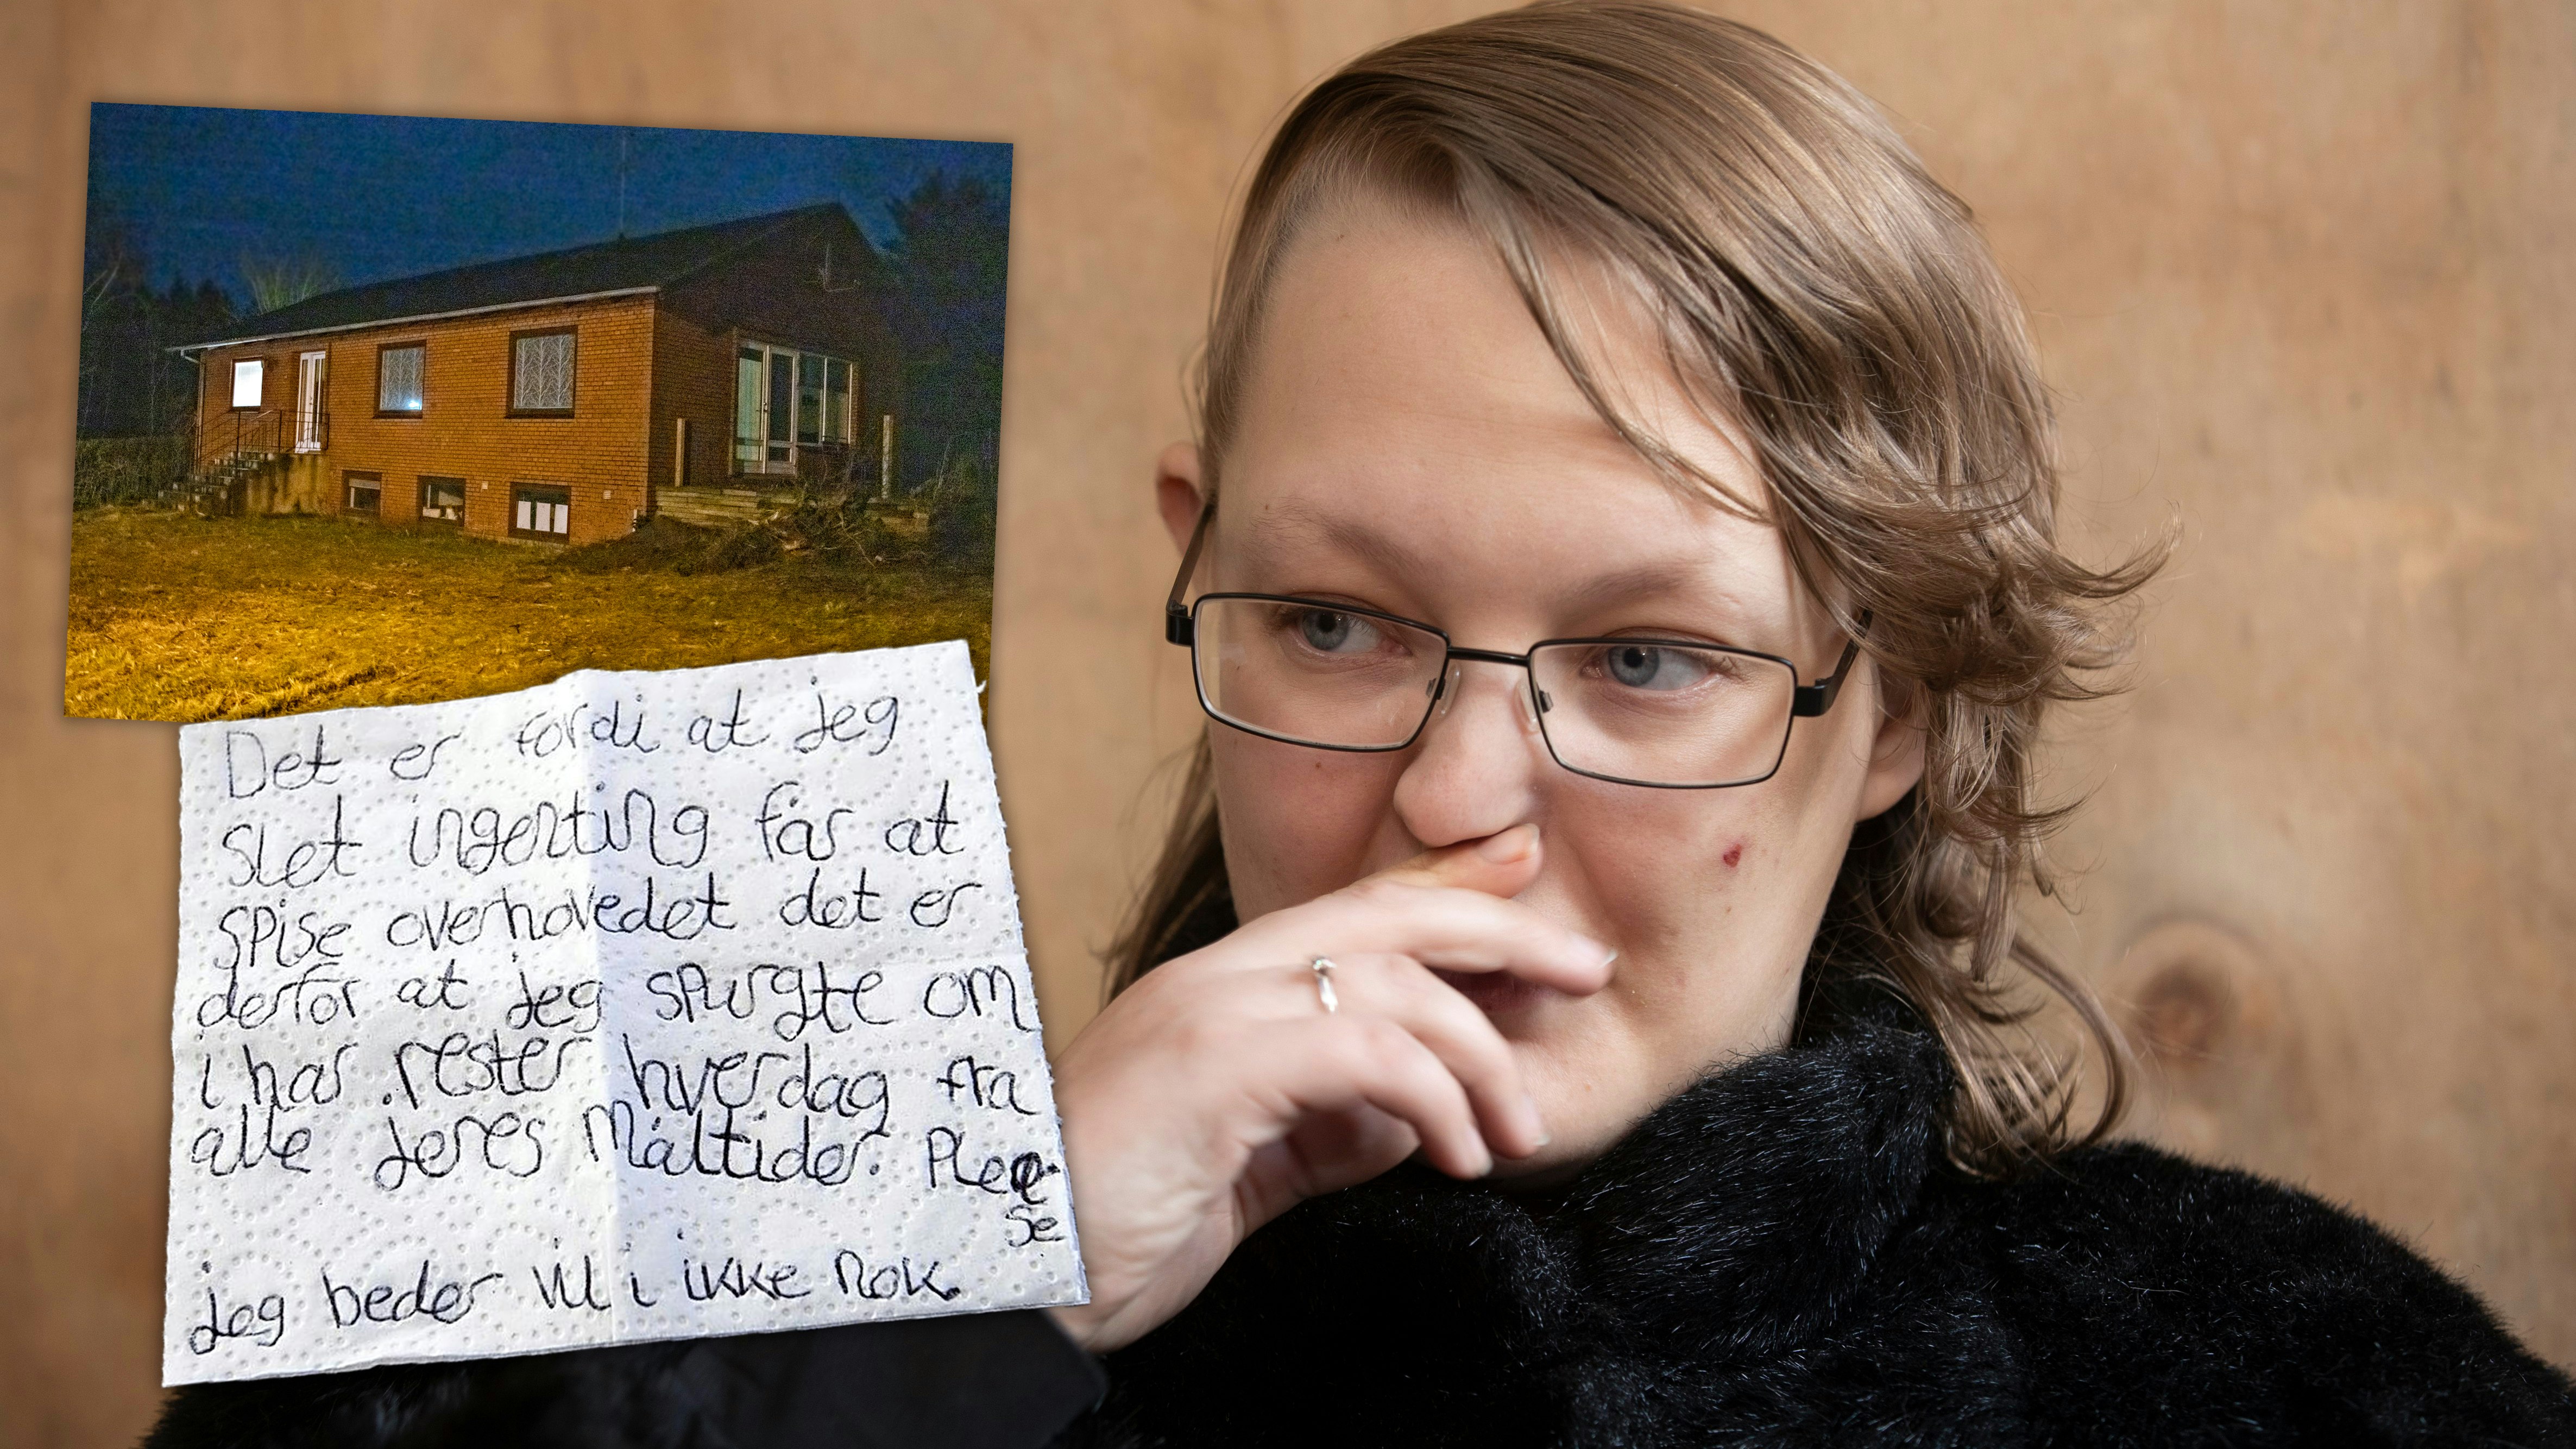 23-årig kvinde skrev sos-brev: Holdt fanget og blev udsultet